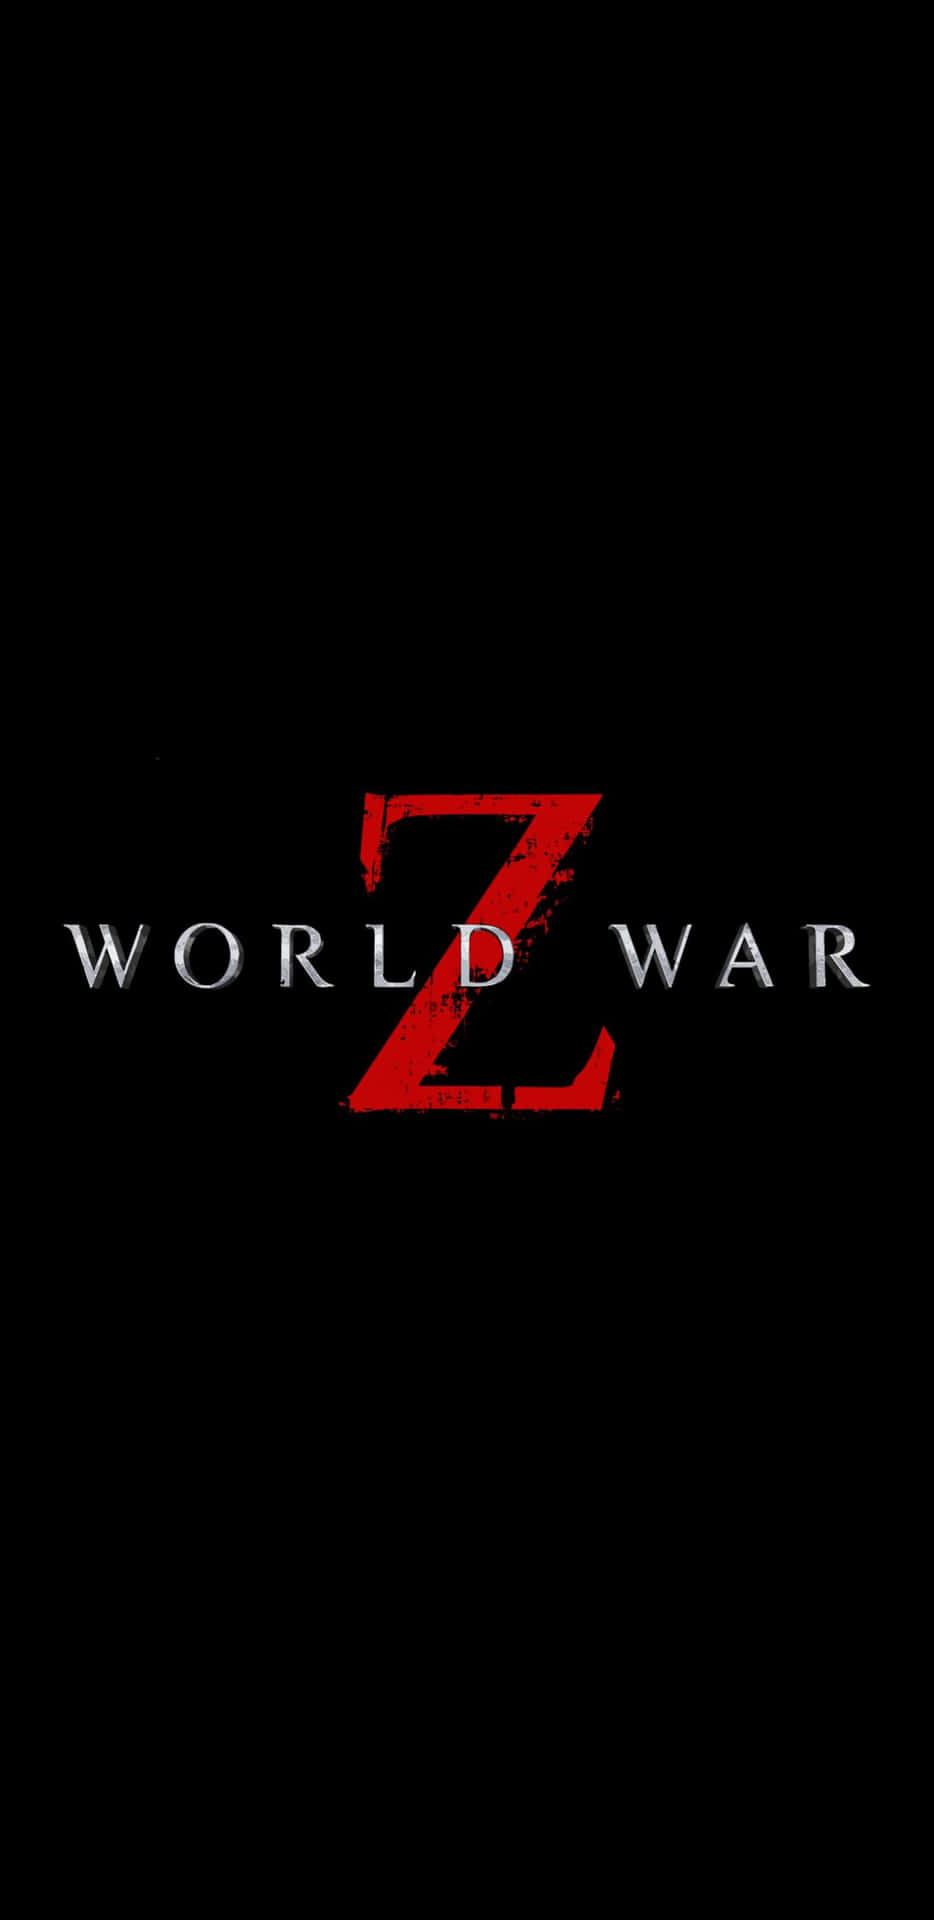 Logodi World War Z Su Sfondo Nero